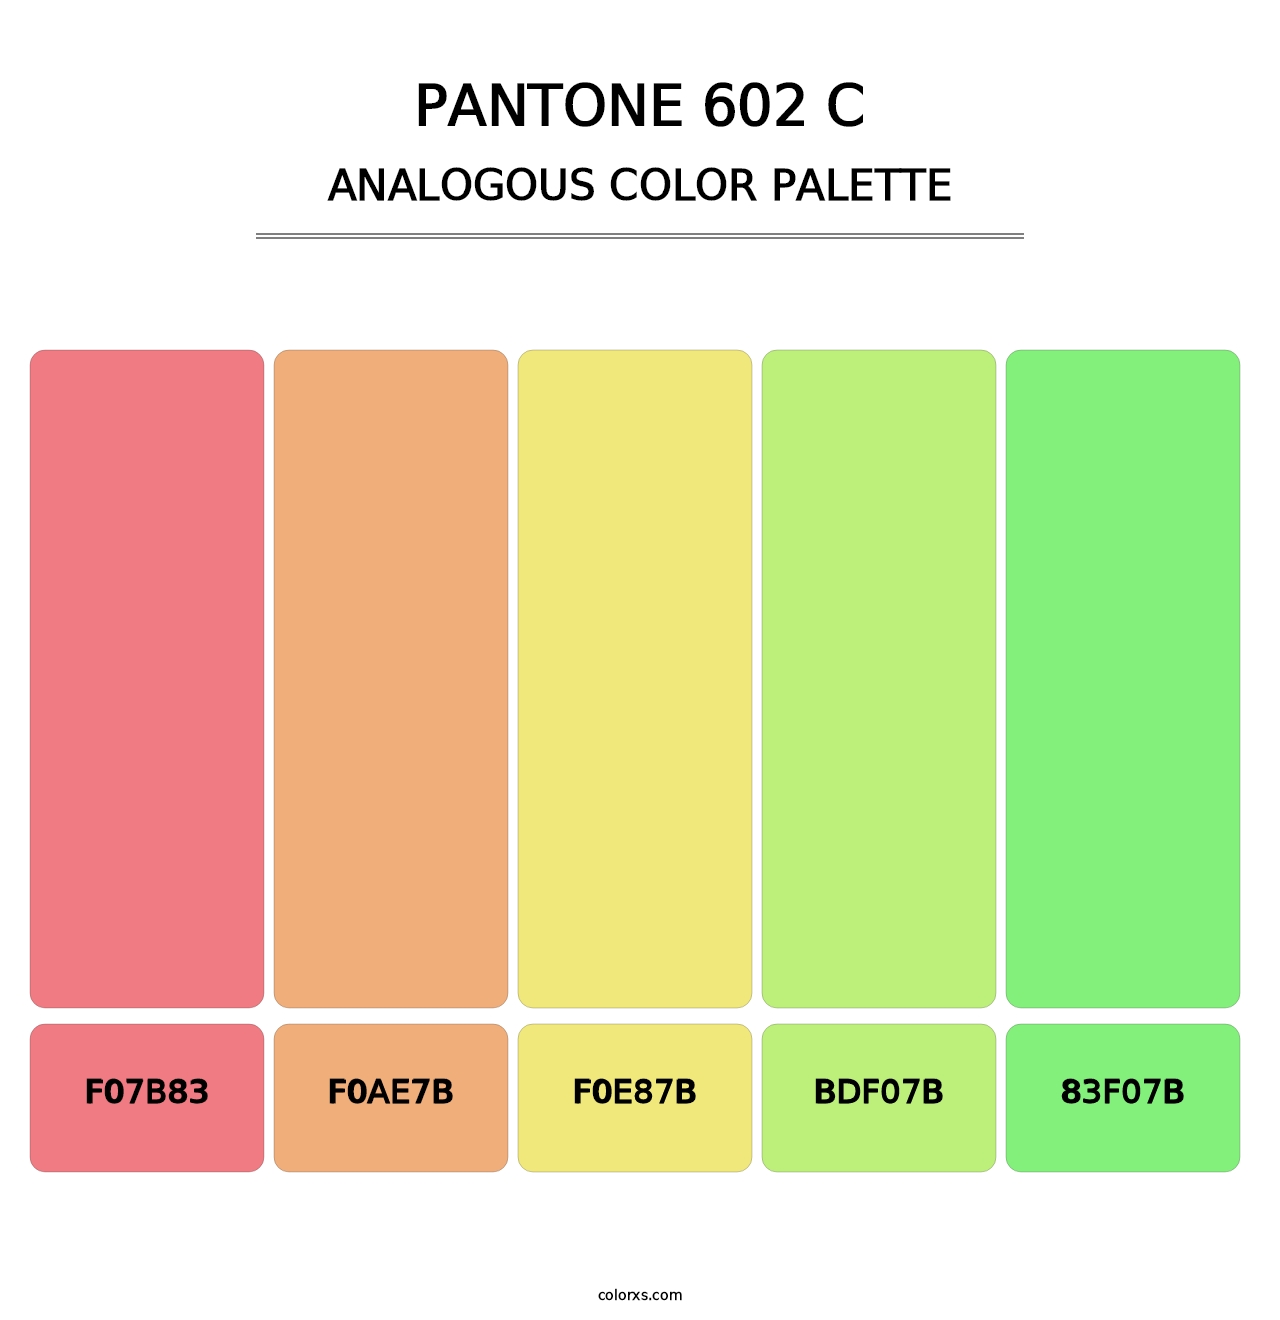 PANTONE 602 C - Analogous Color Palette